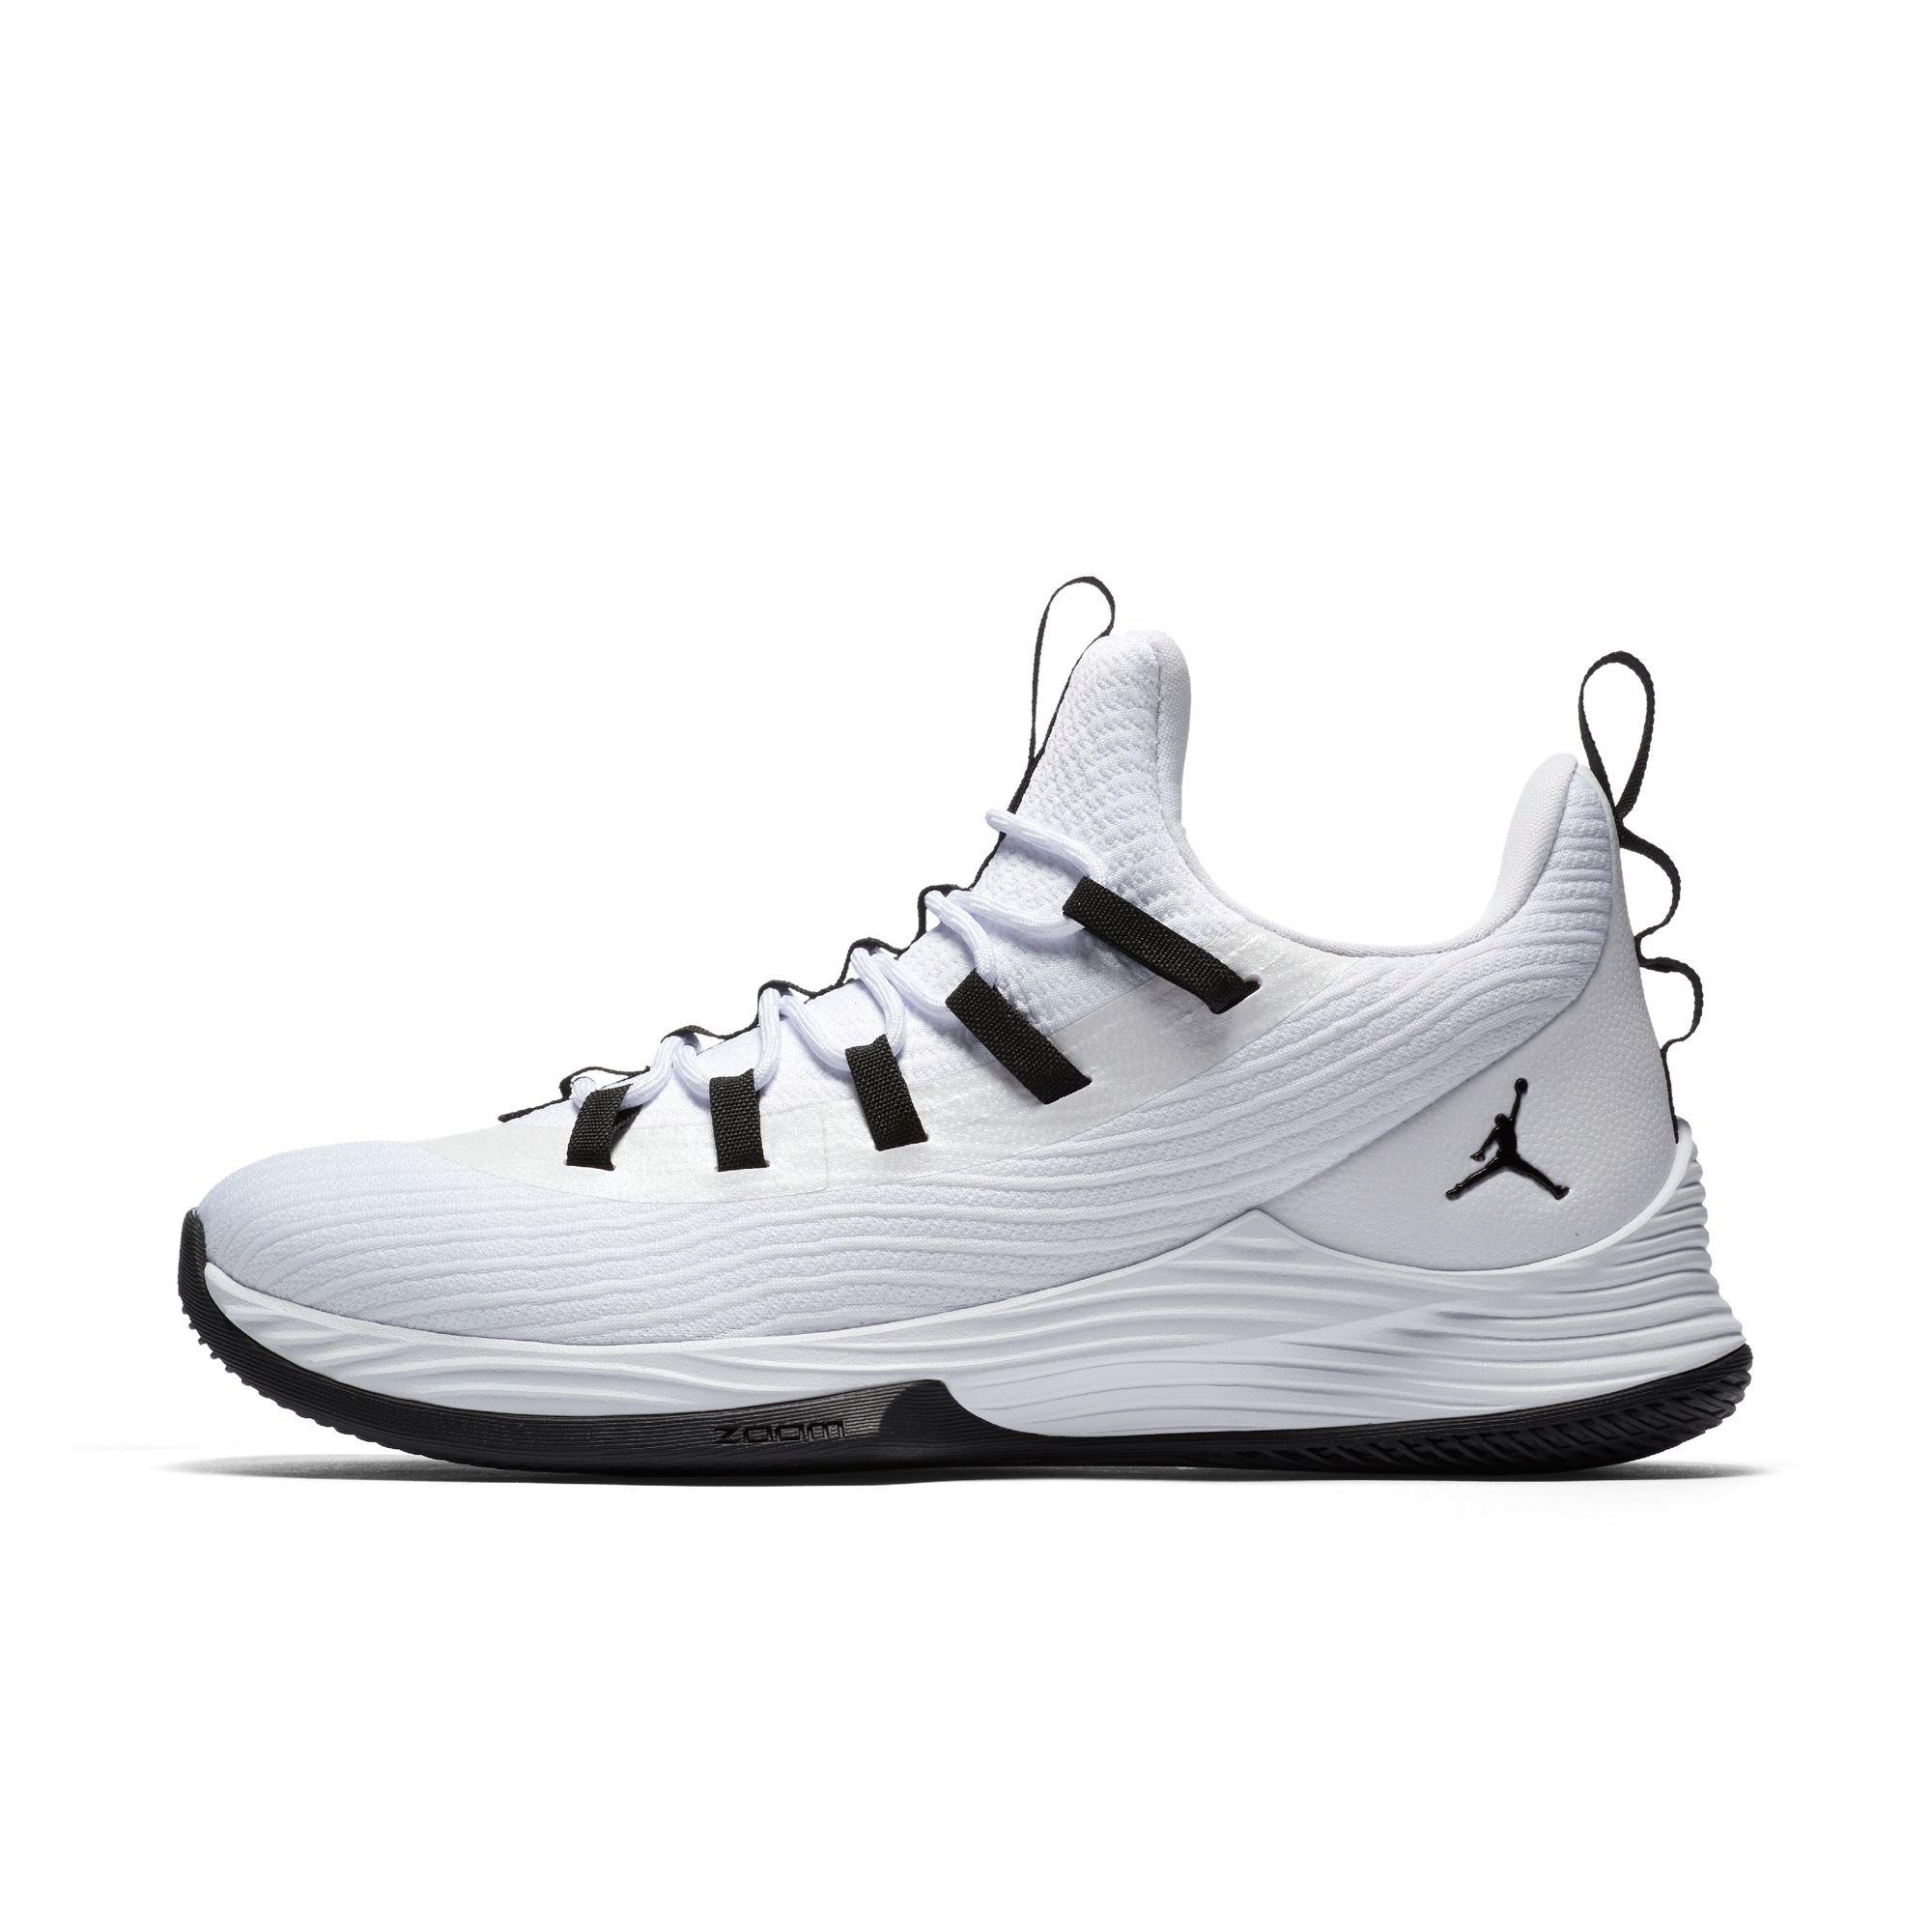 jordan ultra fly 2 low men's basketball shoe